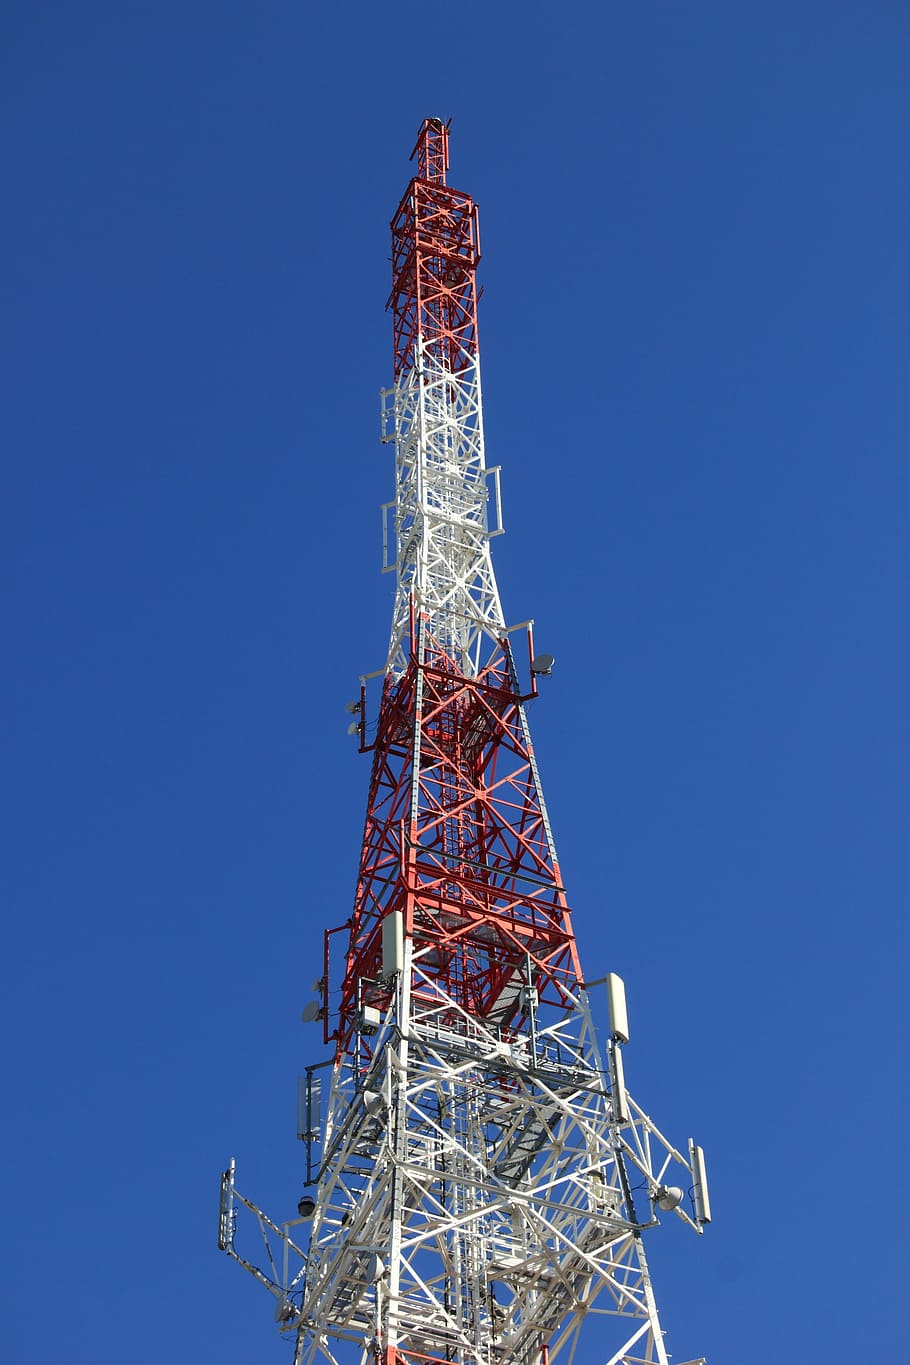 Polandia, telekomunikasi, menara, transmisi, gsm, telepon, tinggi - tinggi, langit, arsitektur, struktur yang dibangun